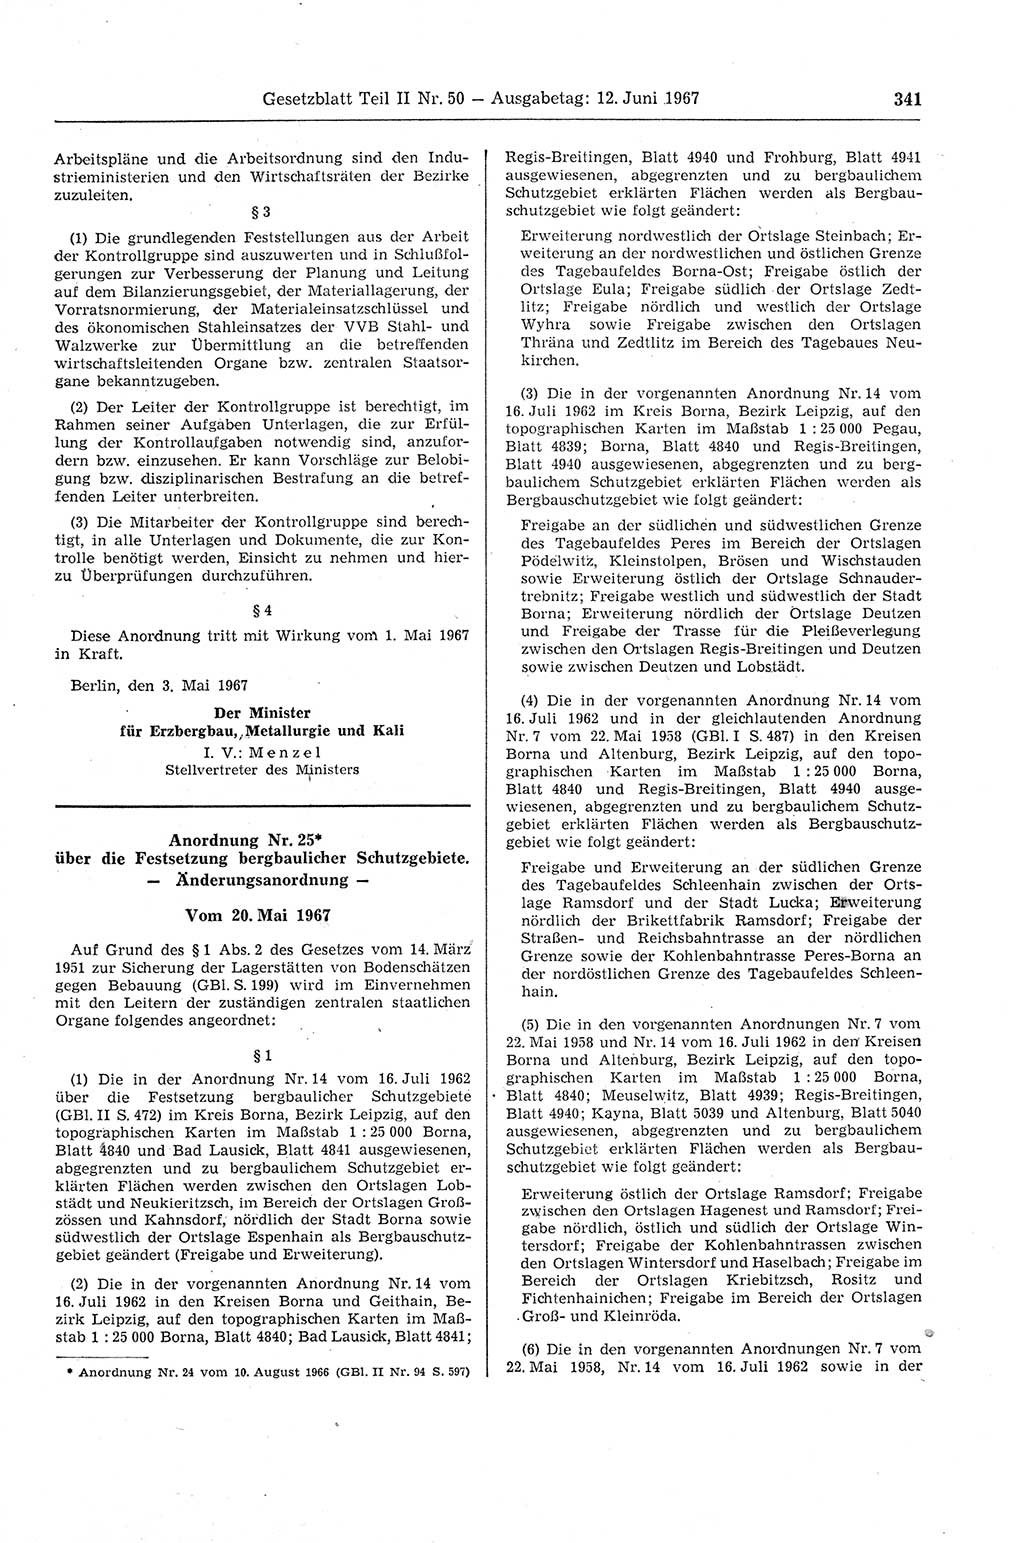 Gesetzblatt (GBl.) der Deutschen Demokratischen Republik (DDR) Teil ⅠⅠ 1967, Seite 341 (GBl. DDR ⅠⅠ 1967, S. 341)